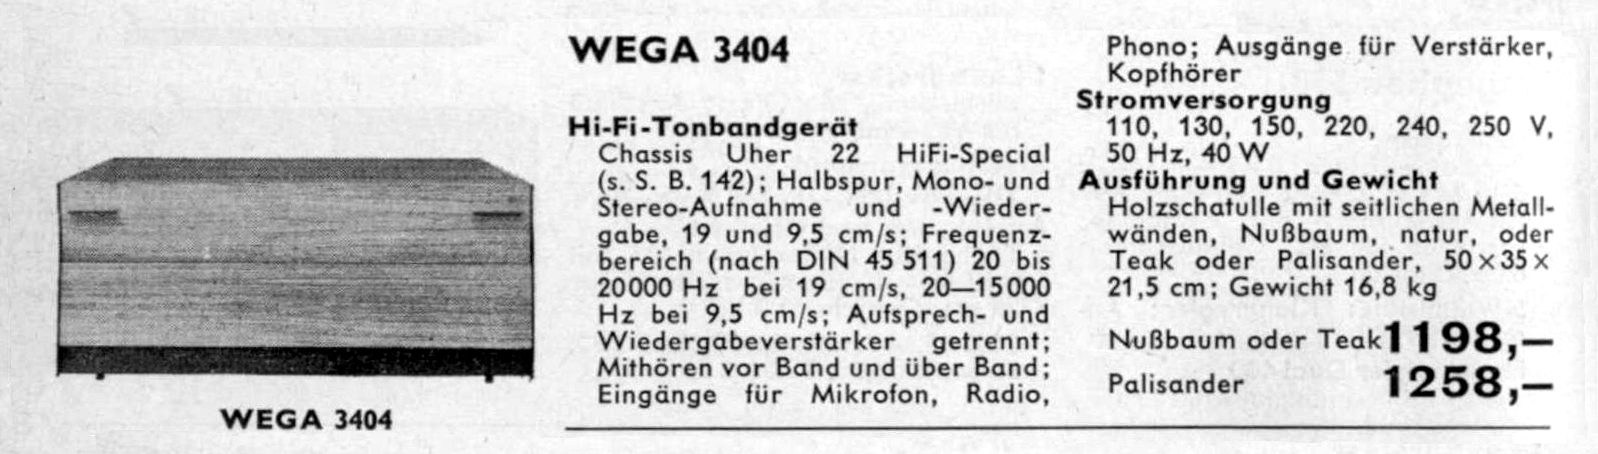 Wega 3404-Daten-1965.jpg